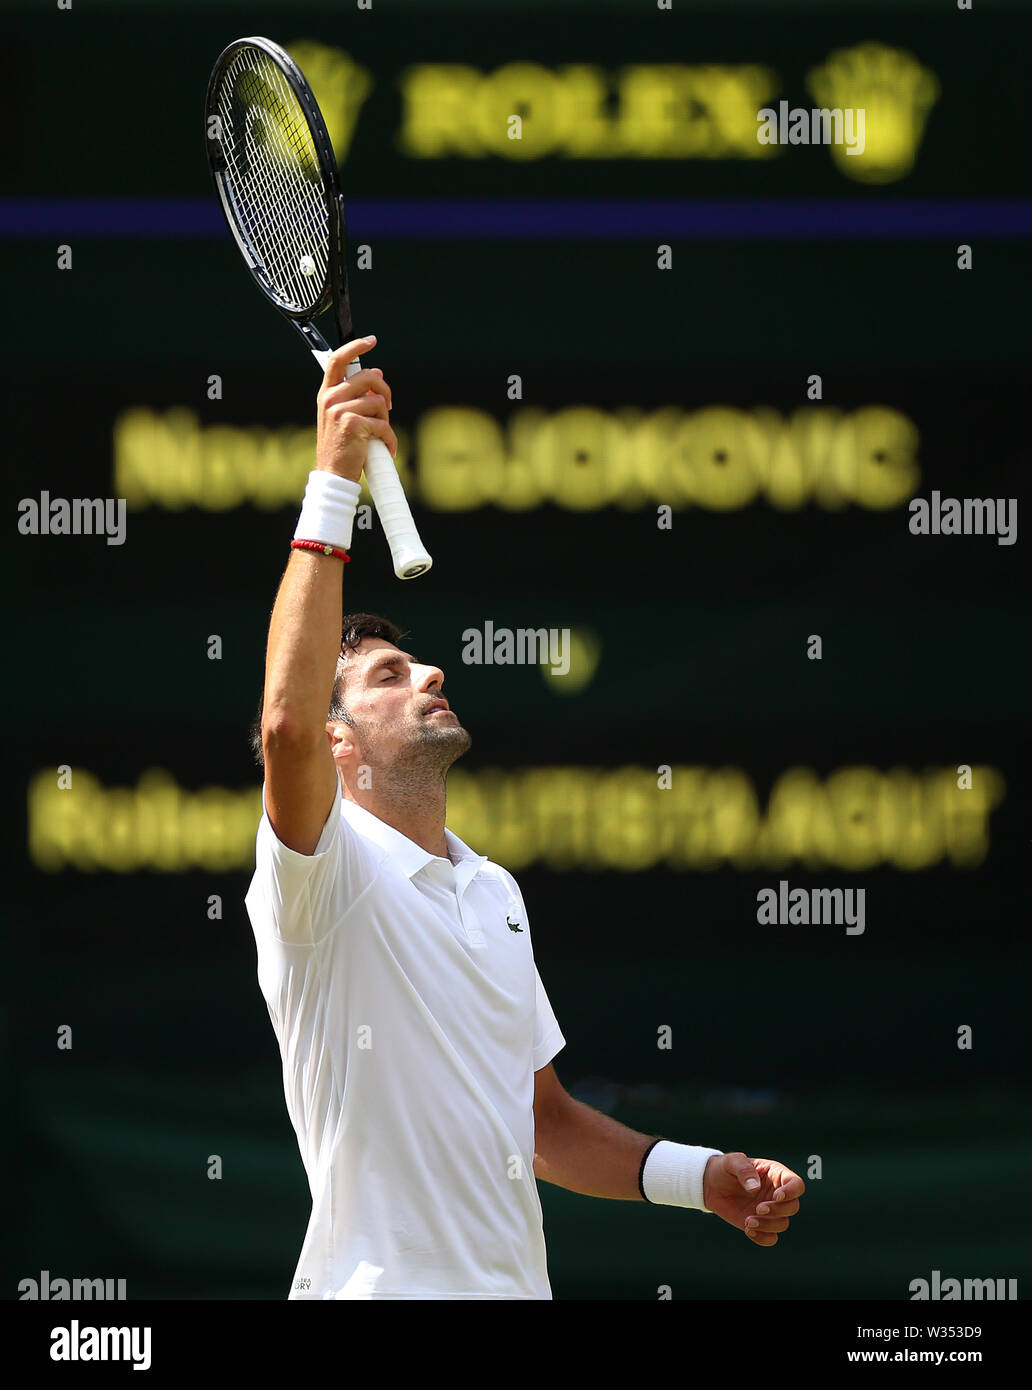 Novak djokovic wimbledon final 2019 hi-res stock photography and images